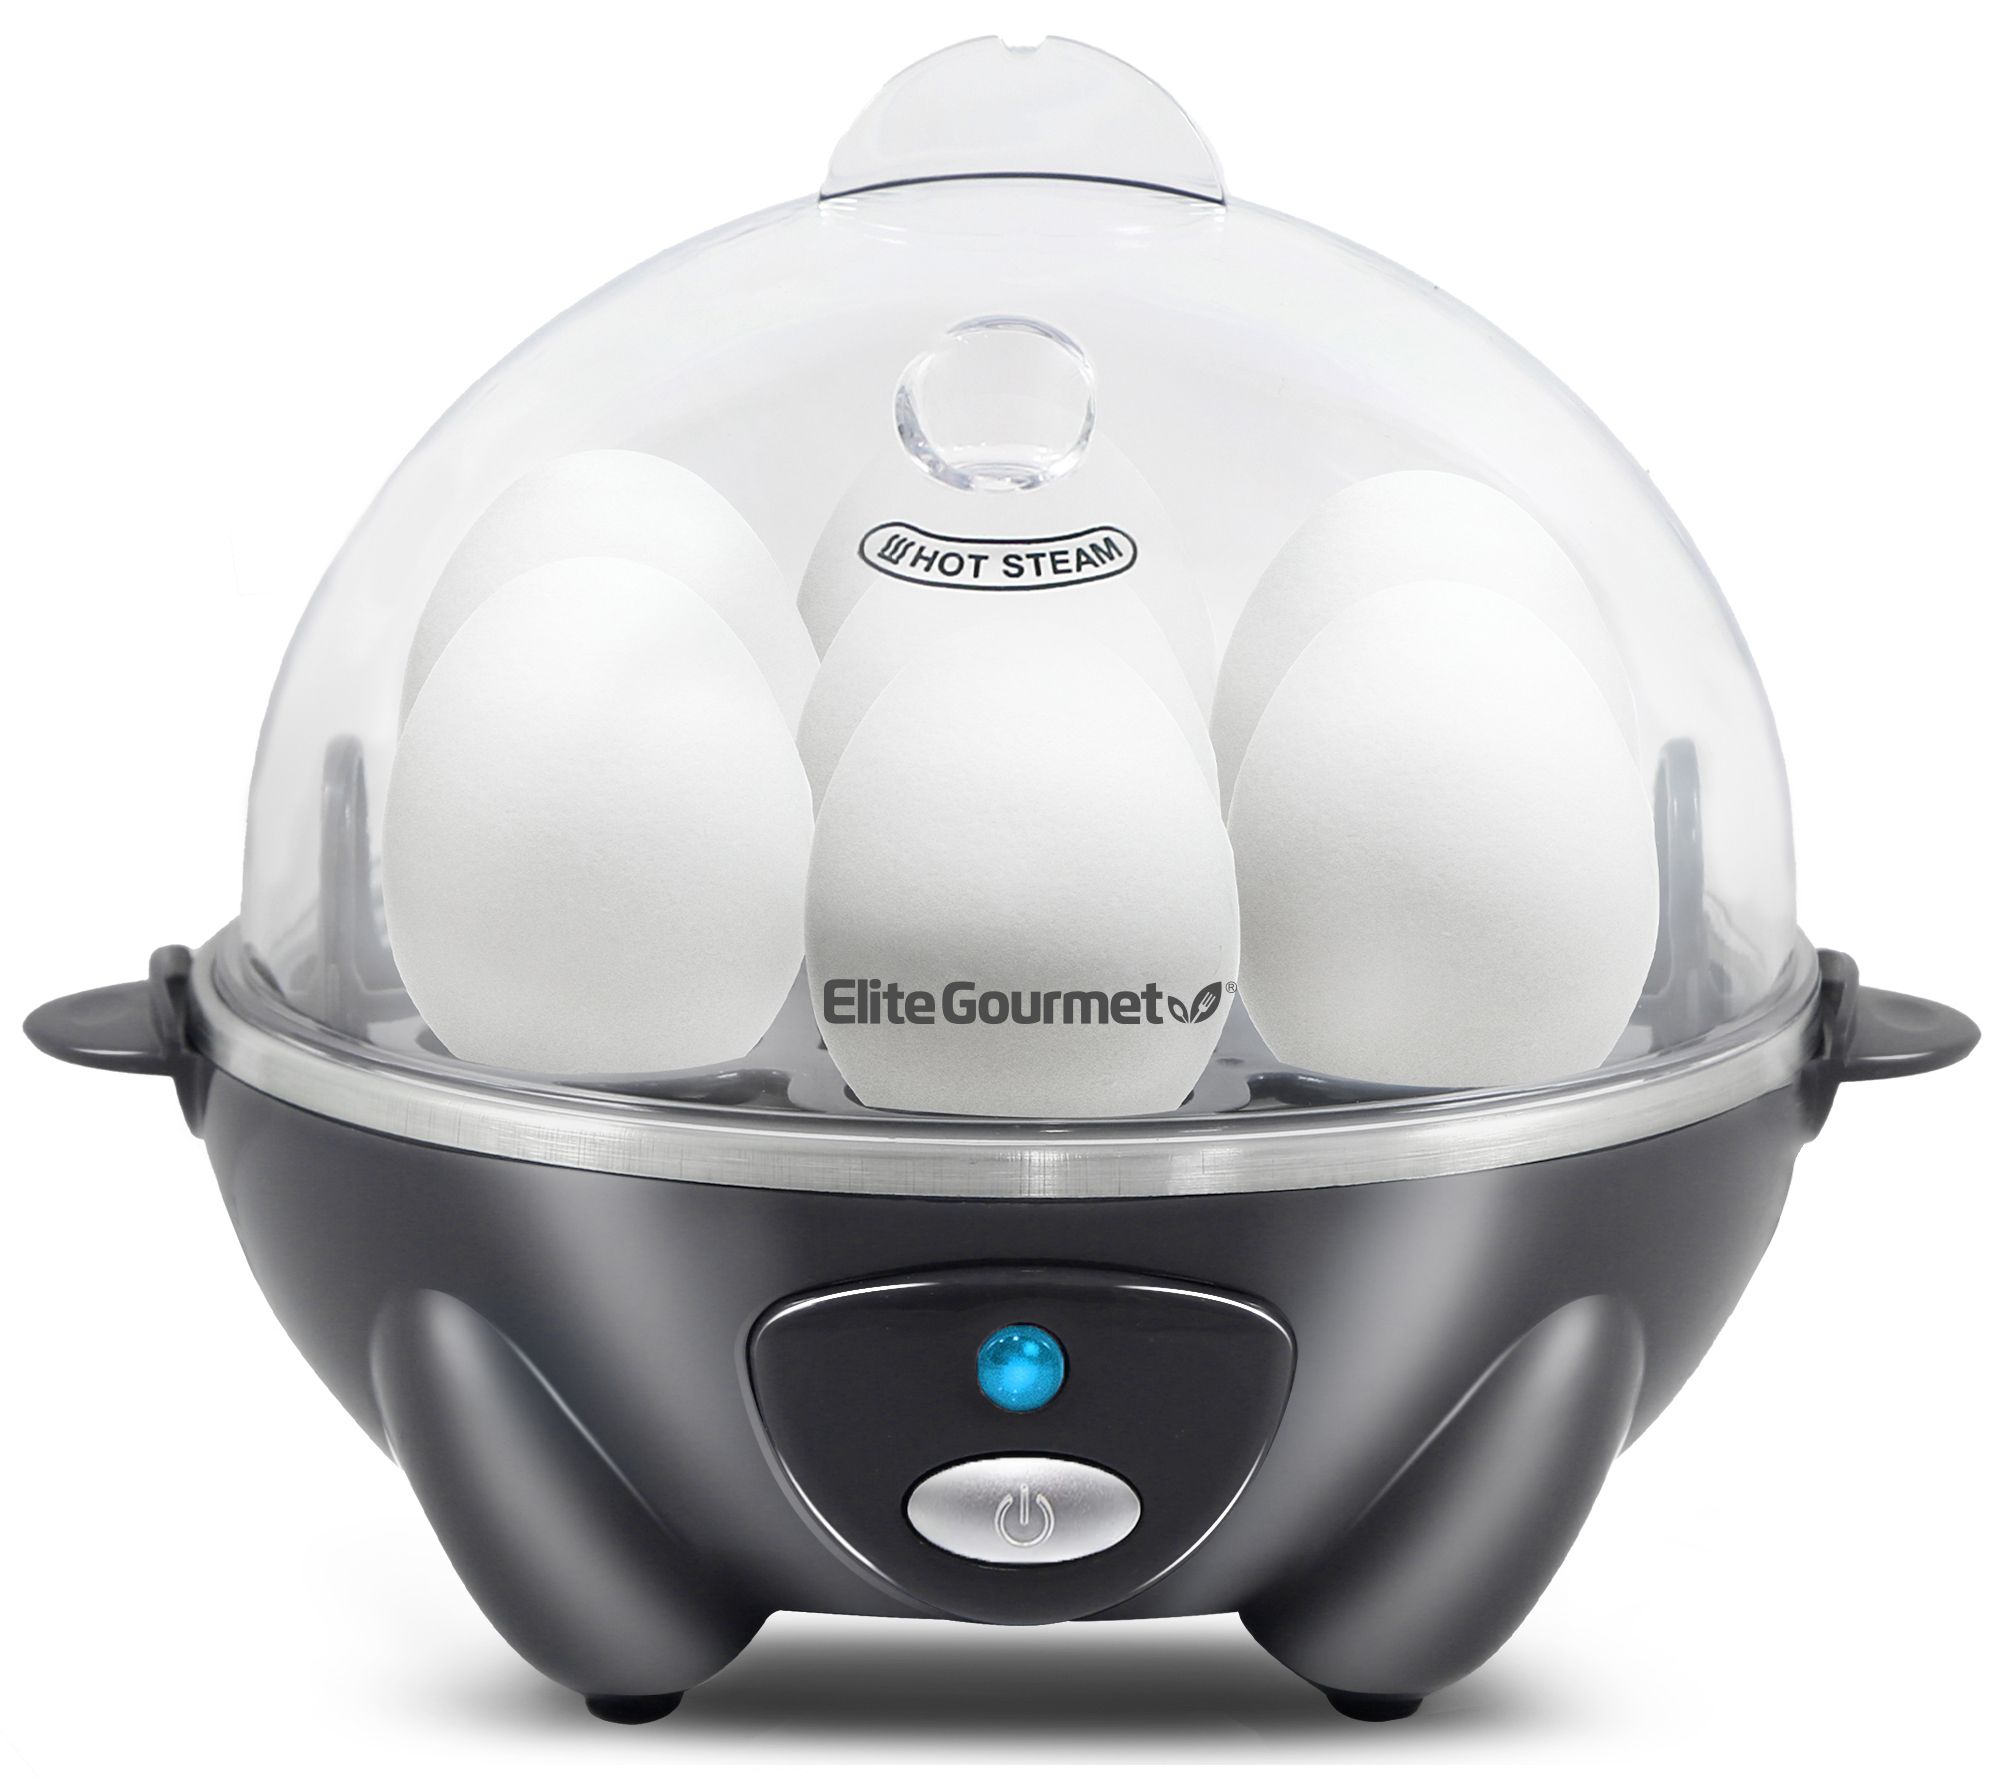 Elite Gourmet Programmable 2-Tier Egg Cooker/Steamer 